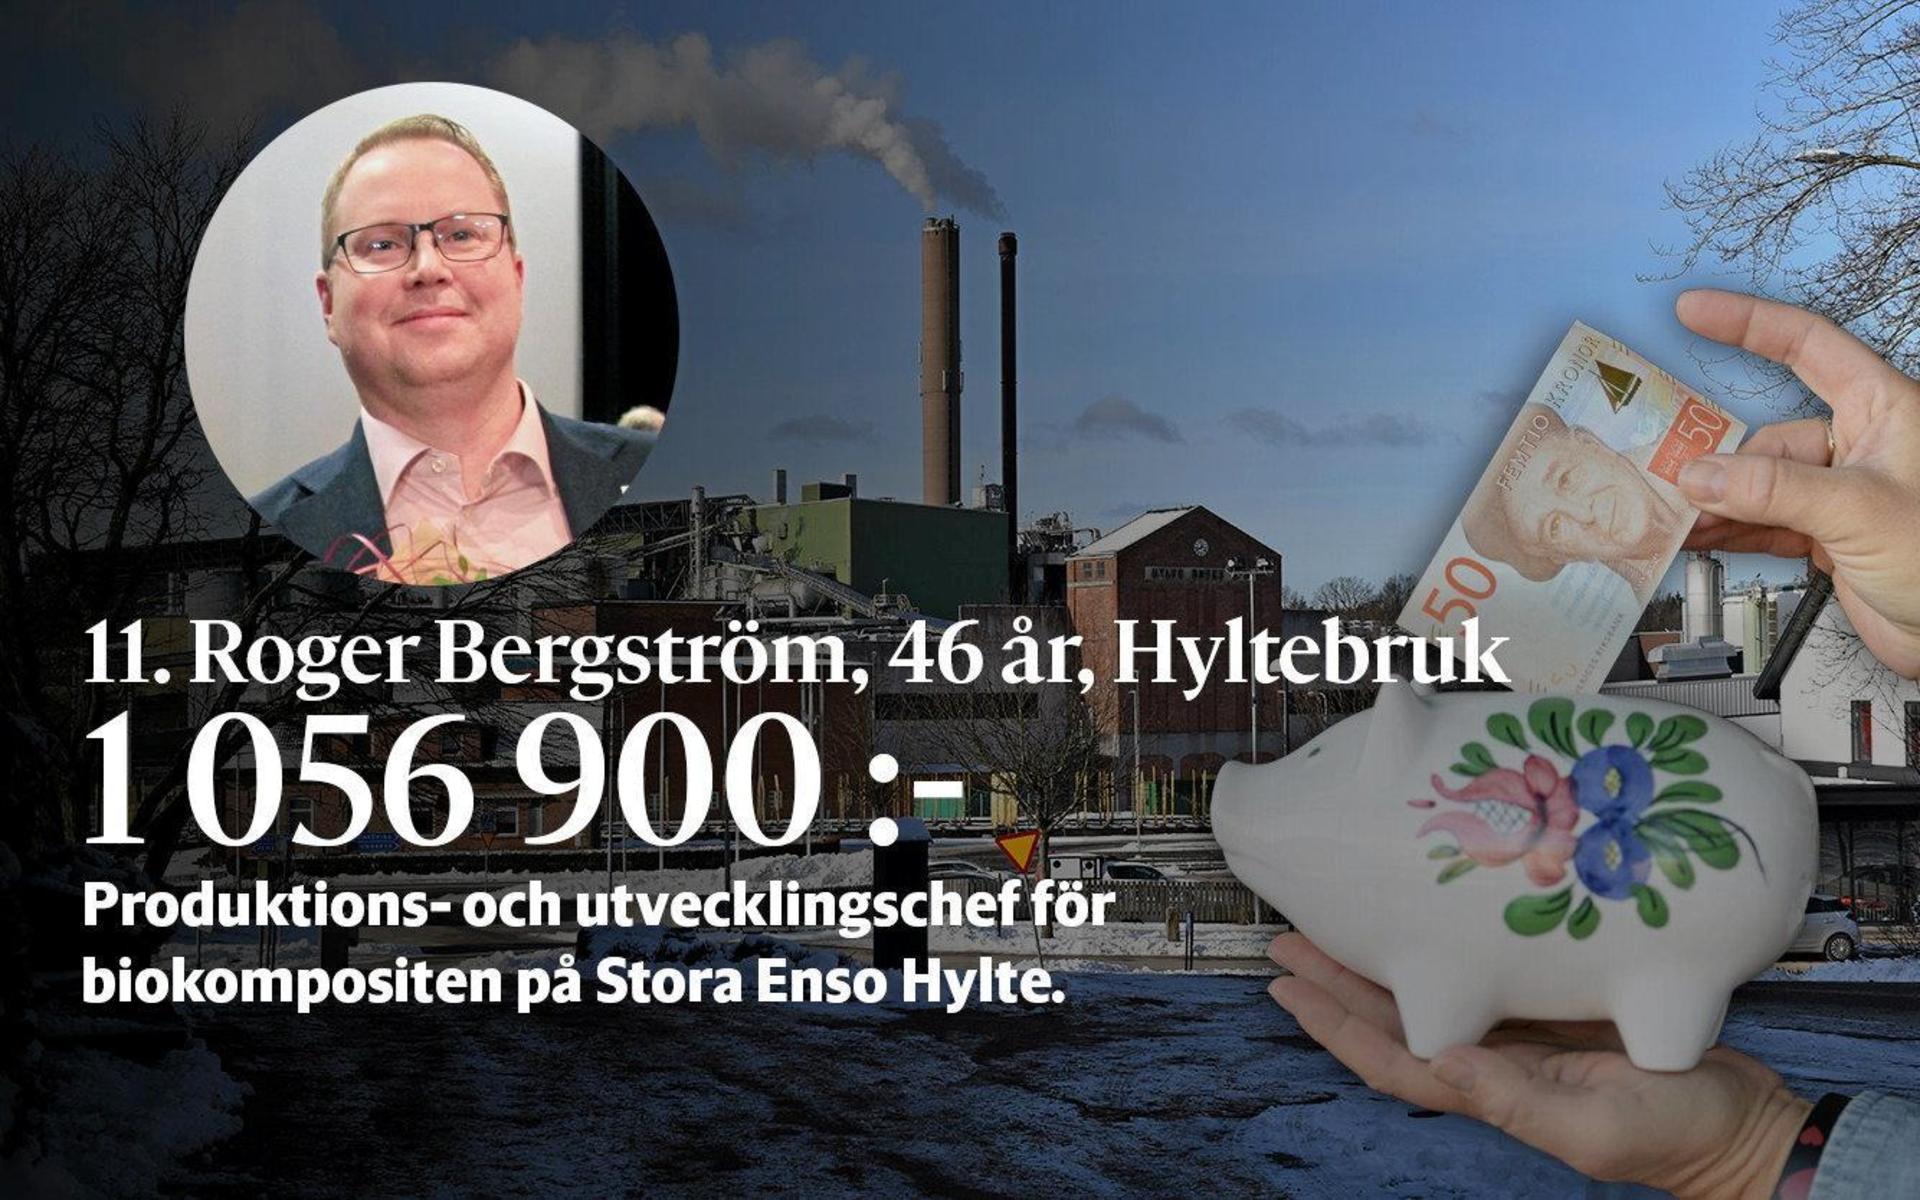 11. Roger Bergström är produktions- och utvecklingschef för biokompositen på Stora Enso Hylte.